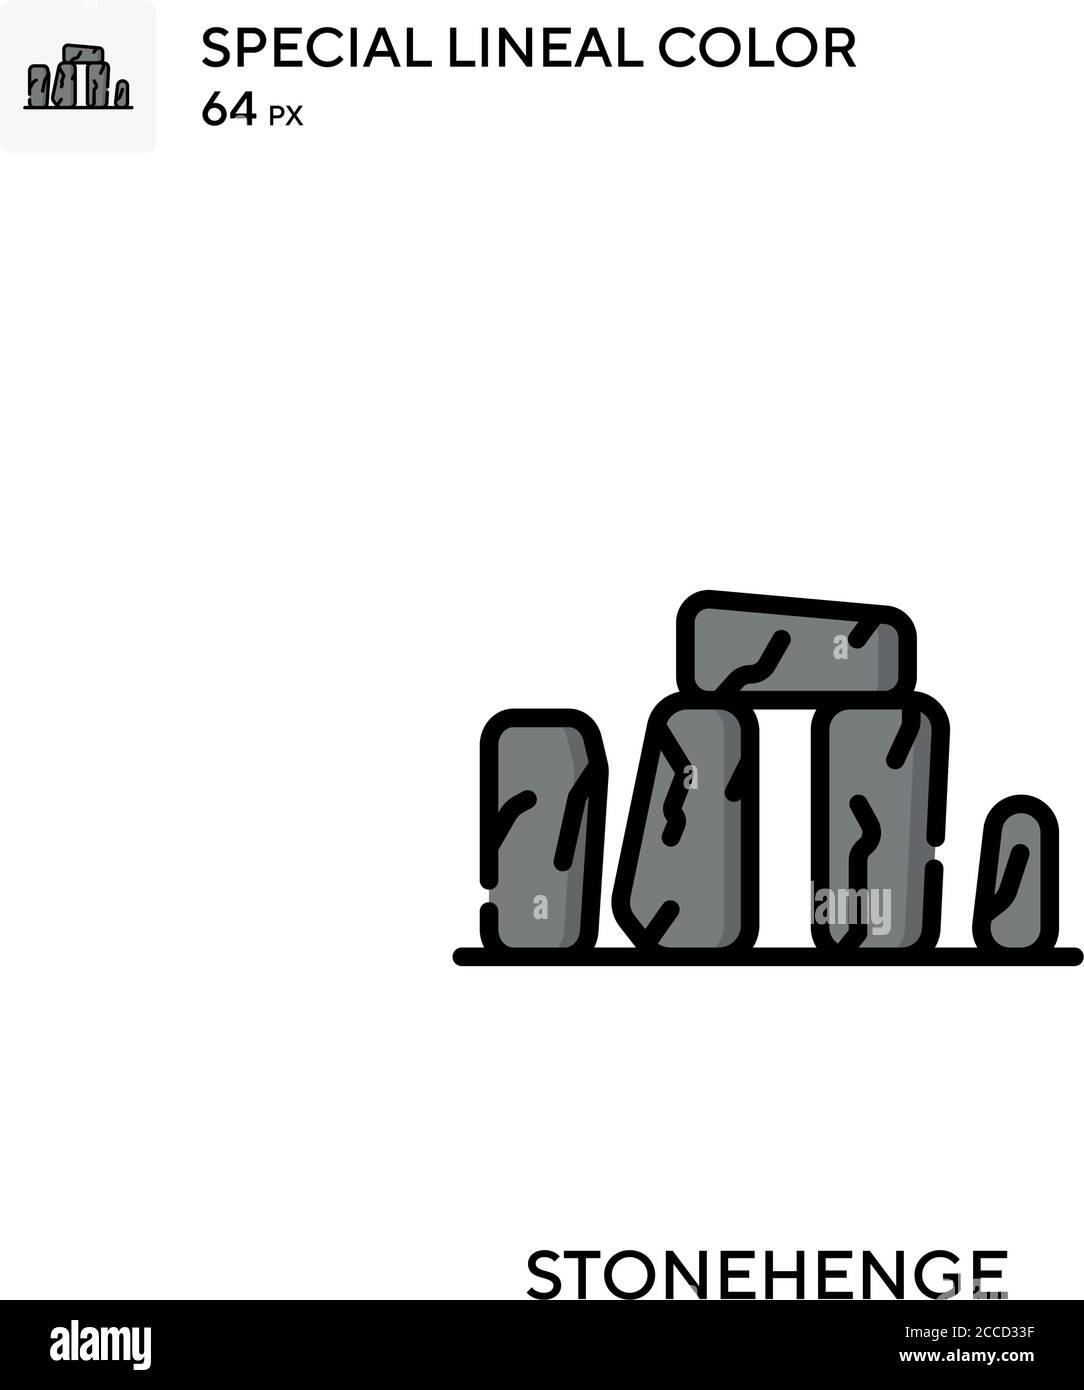 Stonehenge icono de color lineal especial. Plantilla de diseño de símbolos de ilustración para elemento de interfaz de usuario móvil web. Pictograma moderno de color perfecto en trazo editable Ilustración del Vector